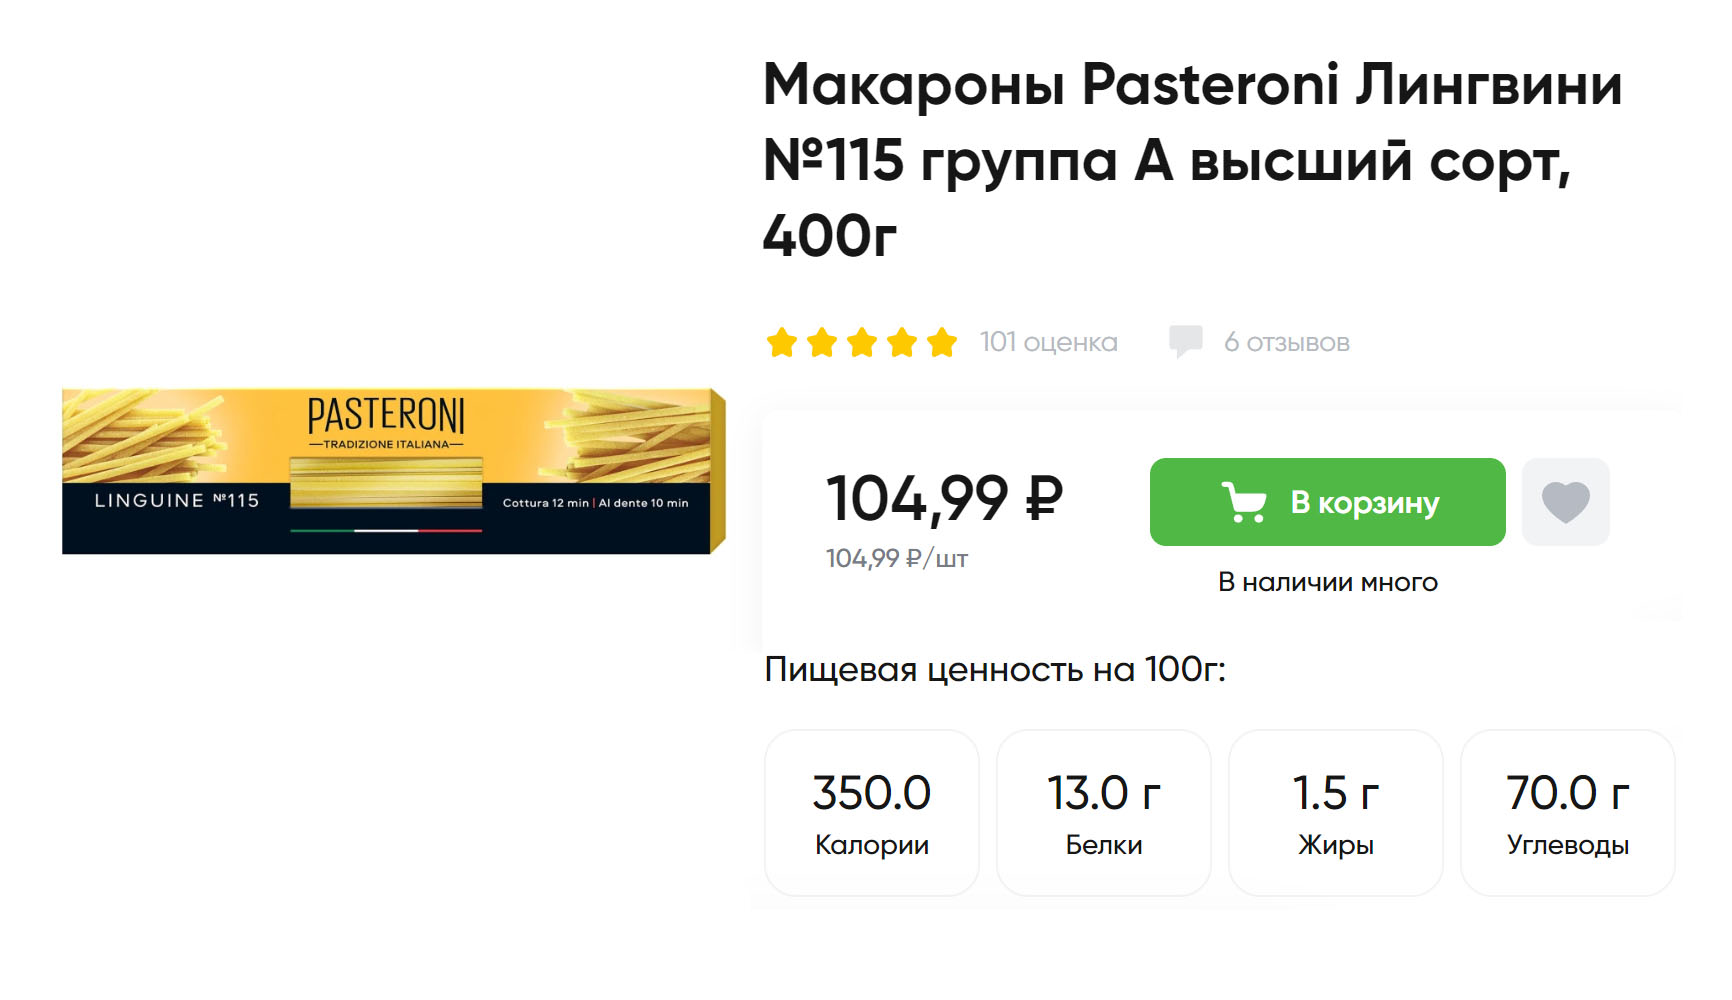 Из брендов, доступных в супермаркетах, бронзовыми фильтрами обрабатывает пасту Pasteroni. Источник: perekrestok.ru